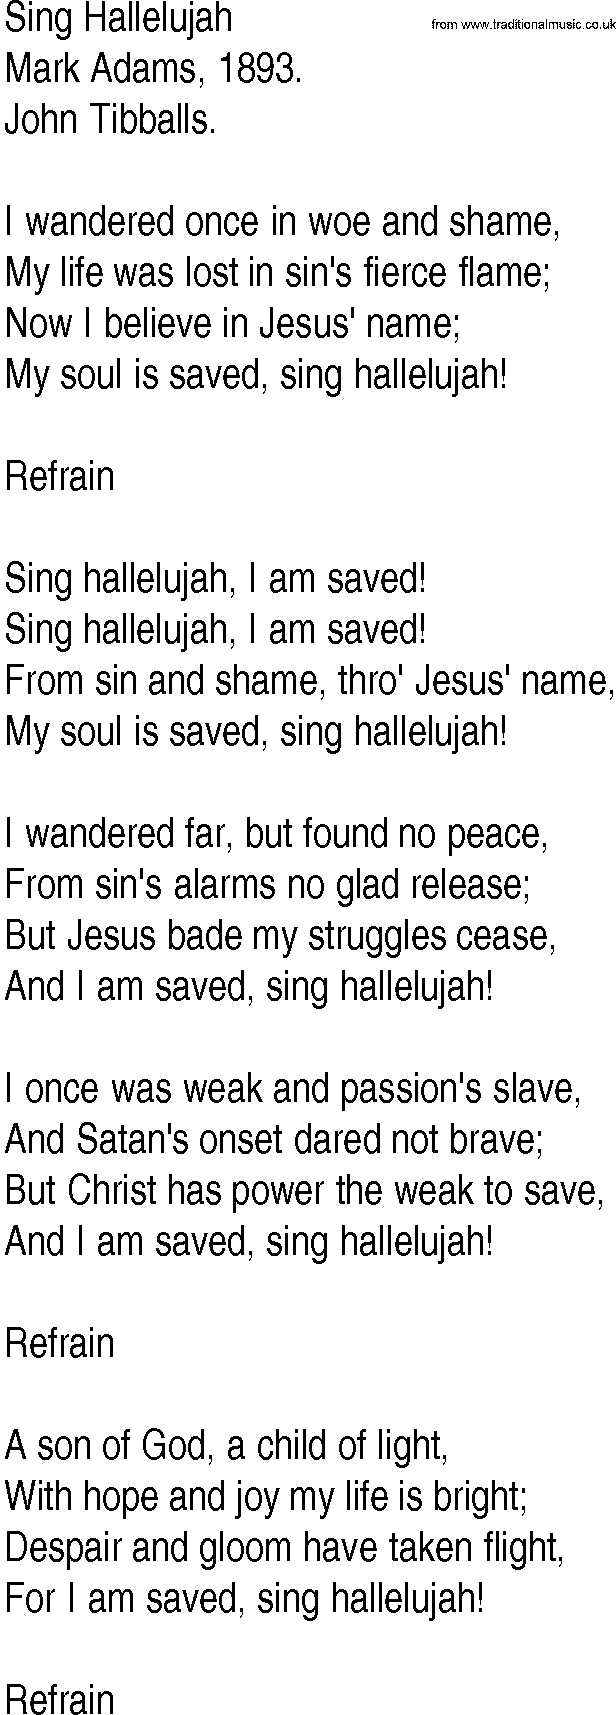 Hymn and Gospel Song: Sing Hallelujah by Mark Adams lyrics